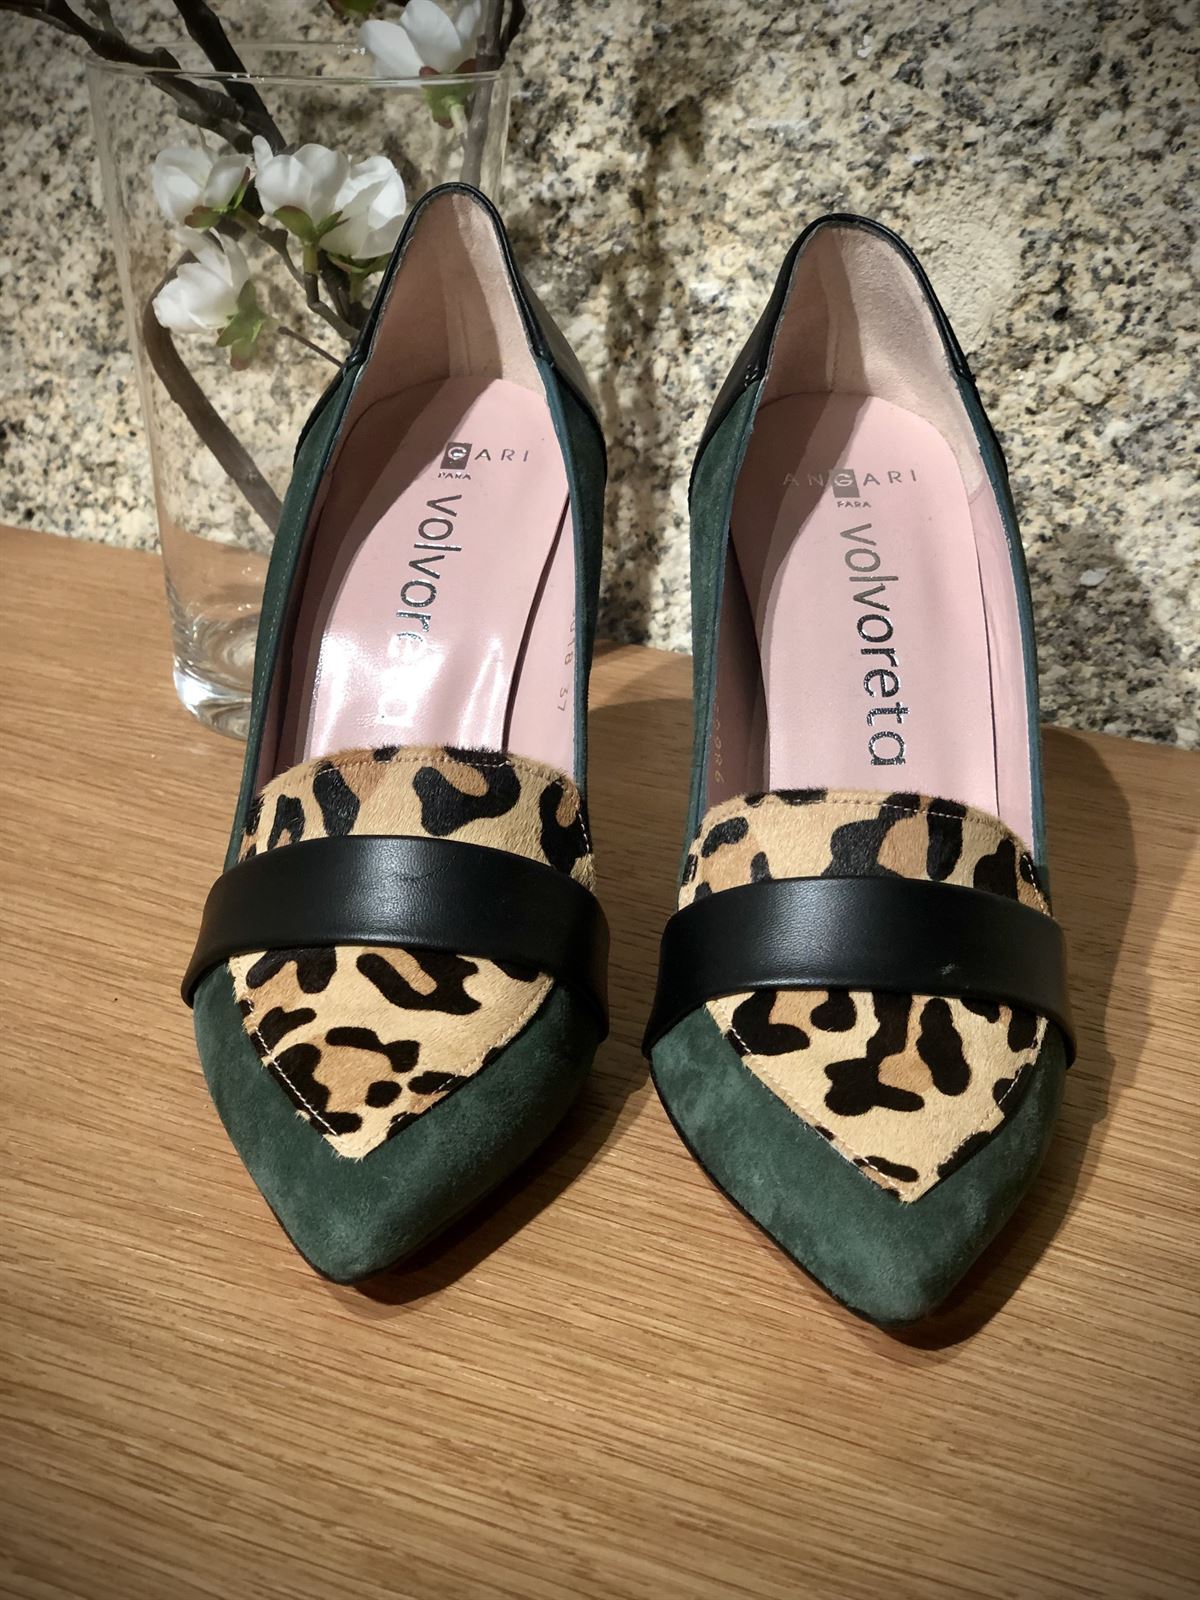 Zapato Angari verde leopardo - Imagen 2